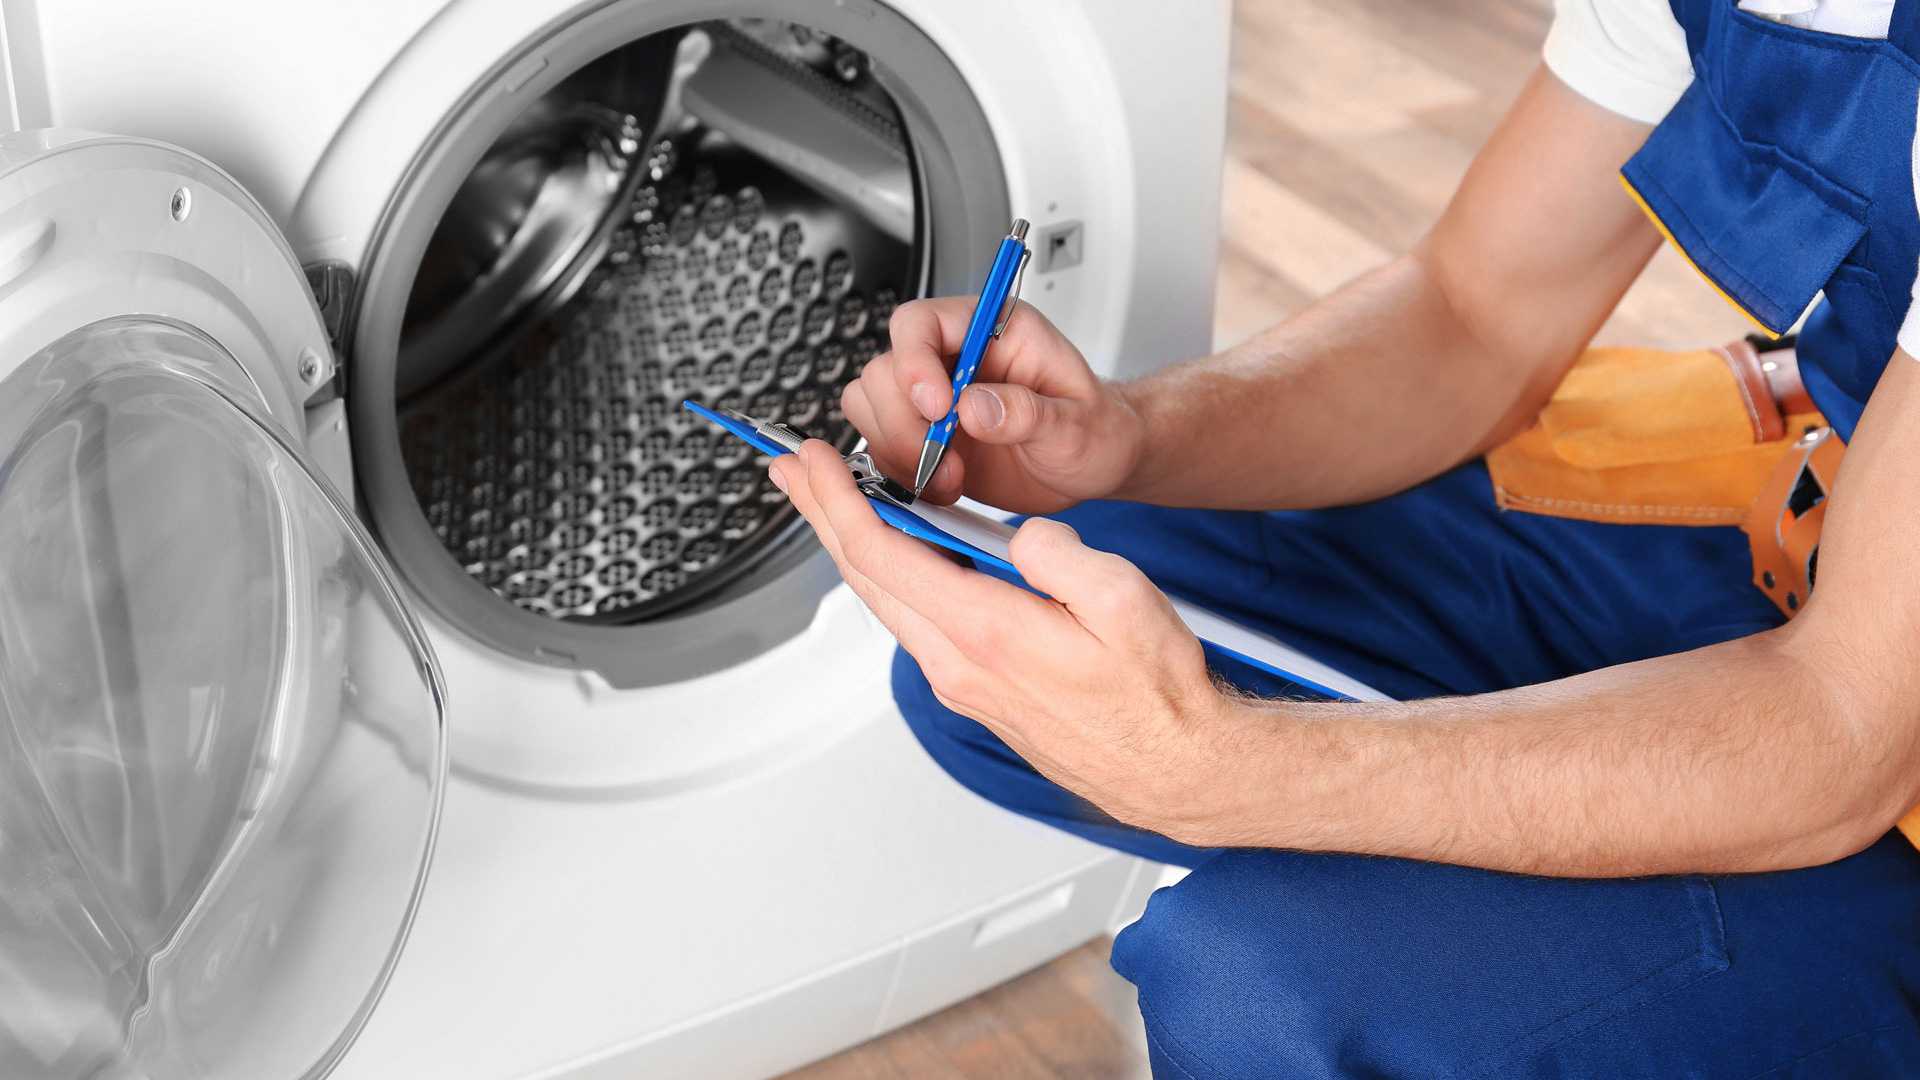 Эффективный ремонт стиральных машин в Астане: где обслуживание становится удобным и надежным